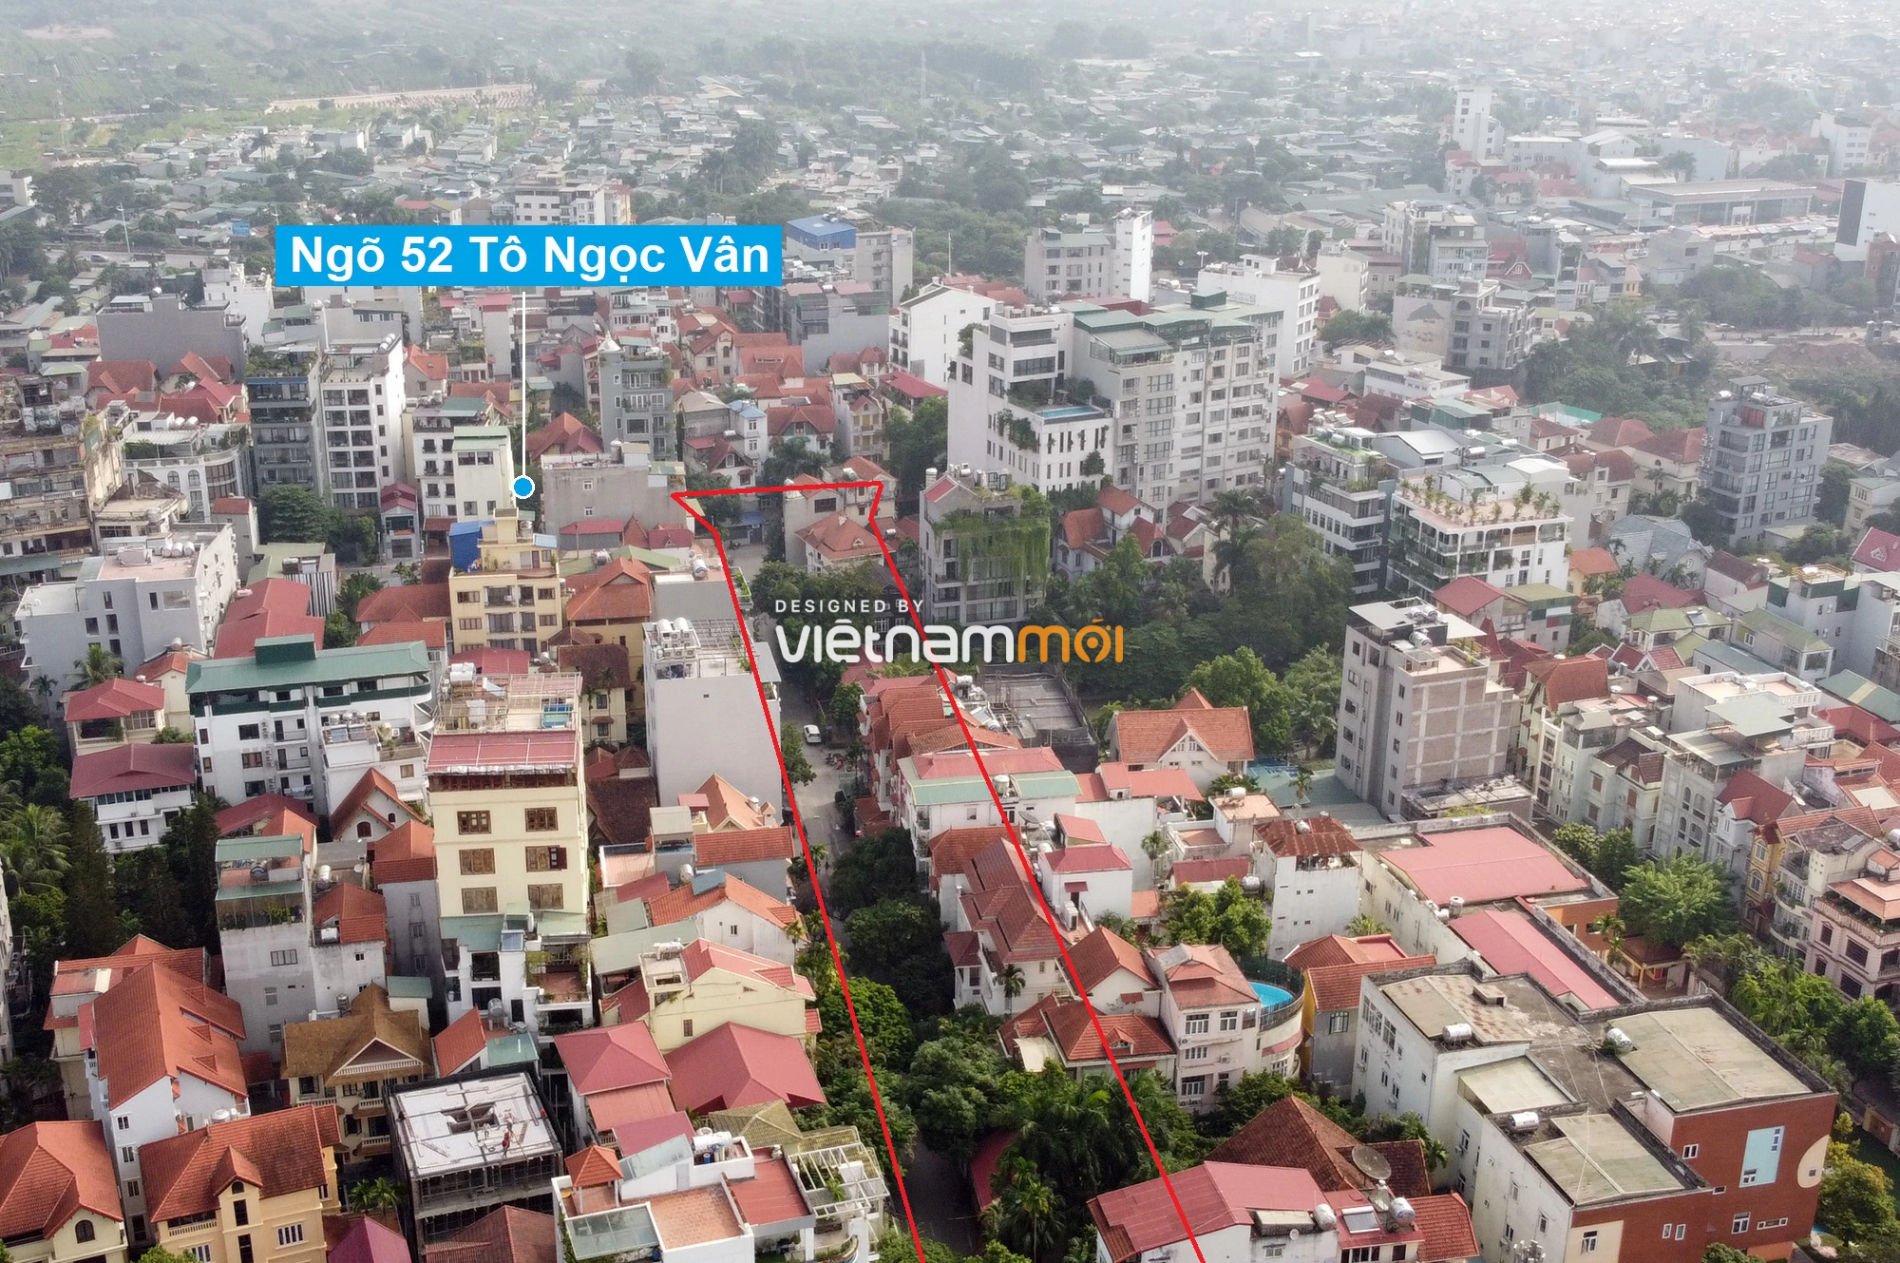 Những khu đất sắp thu hồi để mở đường ở quận Tây Hồ, Hà Nội (phần 4) - Ảnh 11.